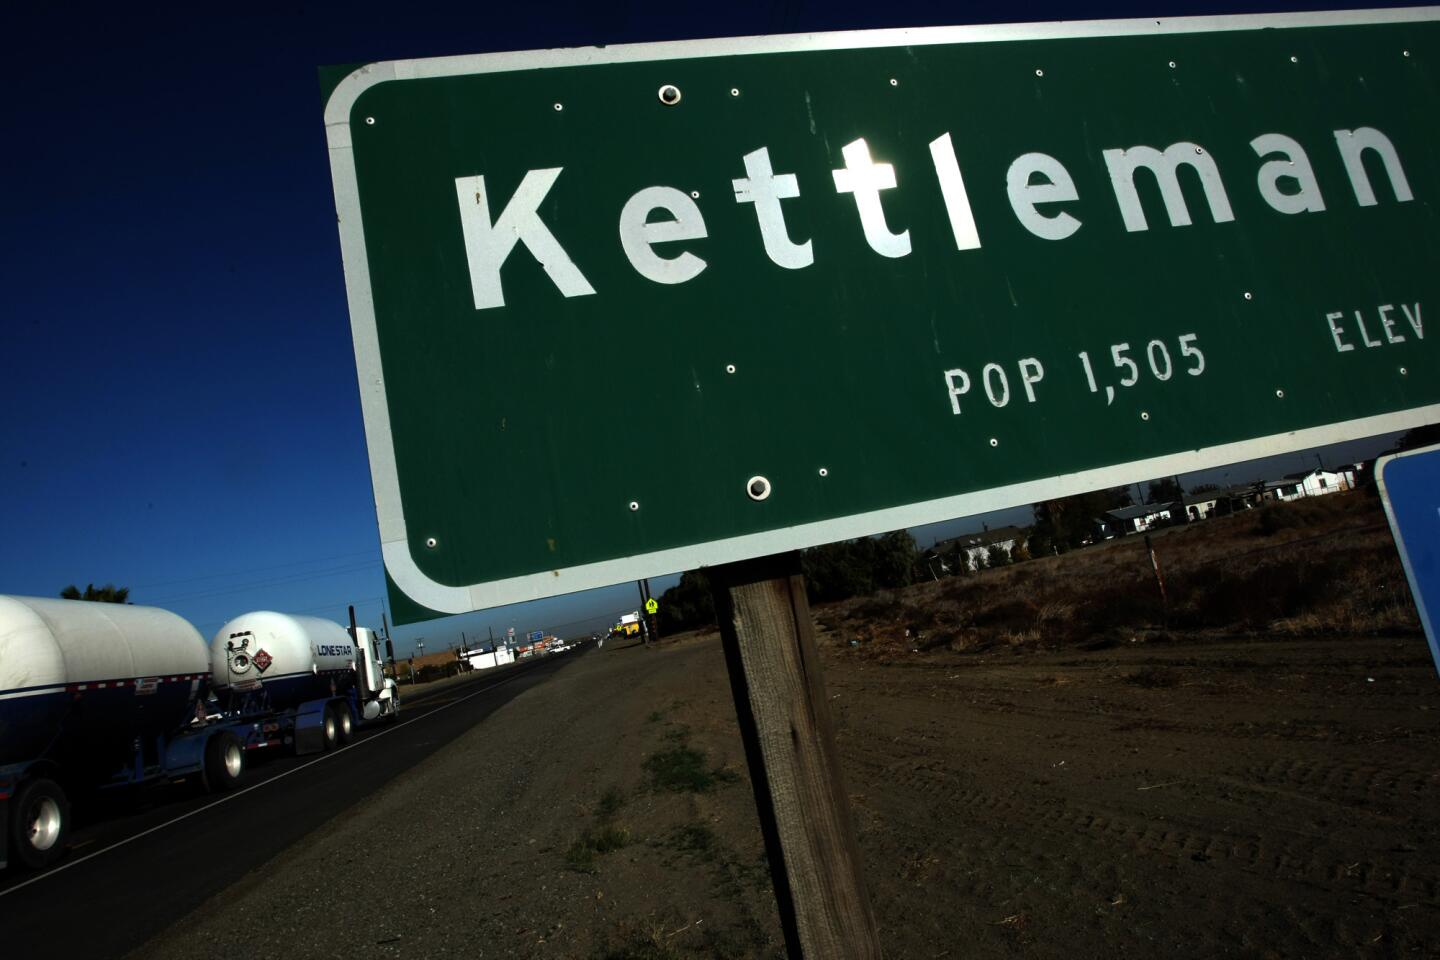 Kettleman City